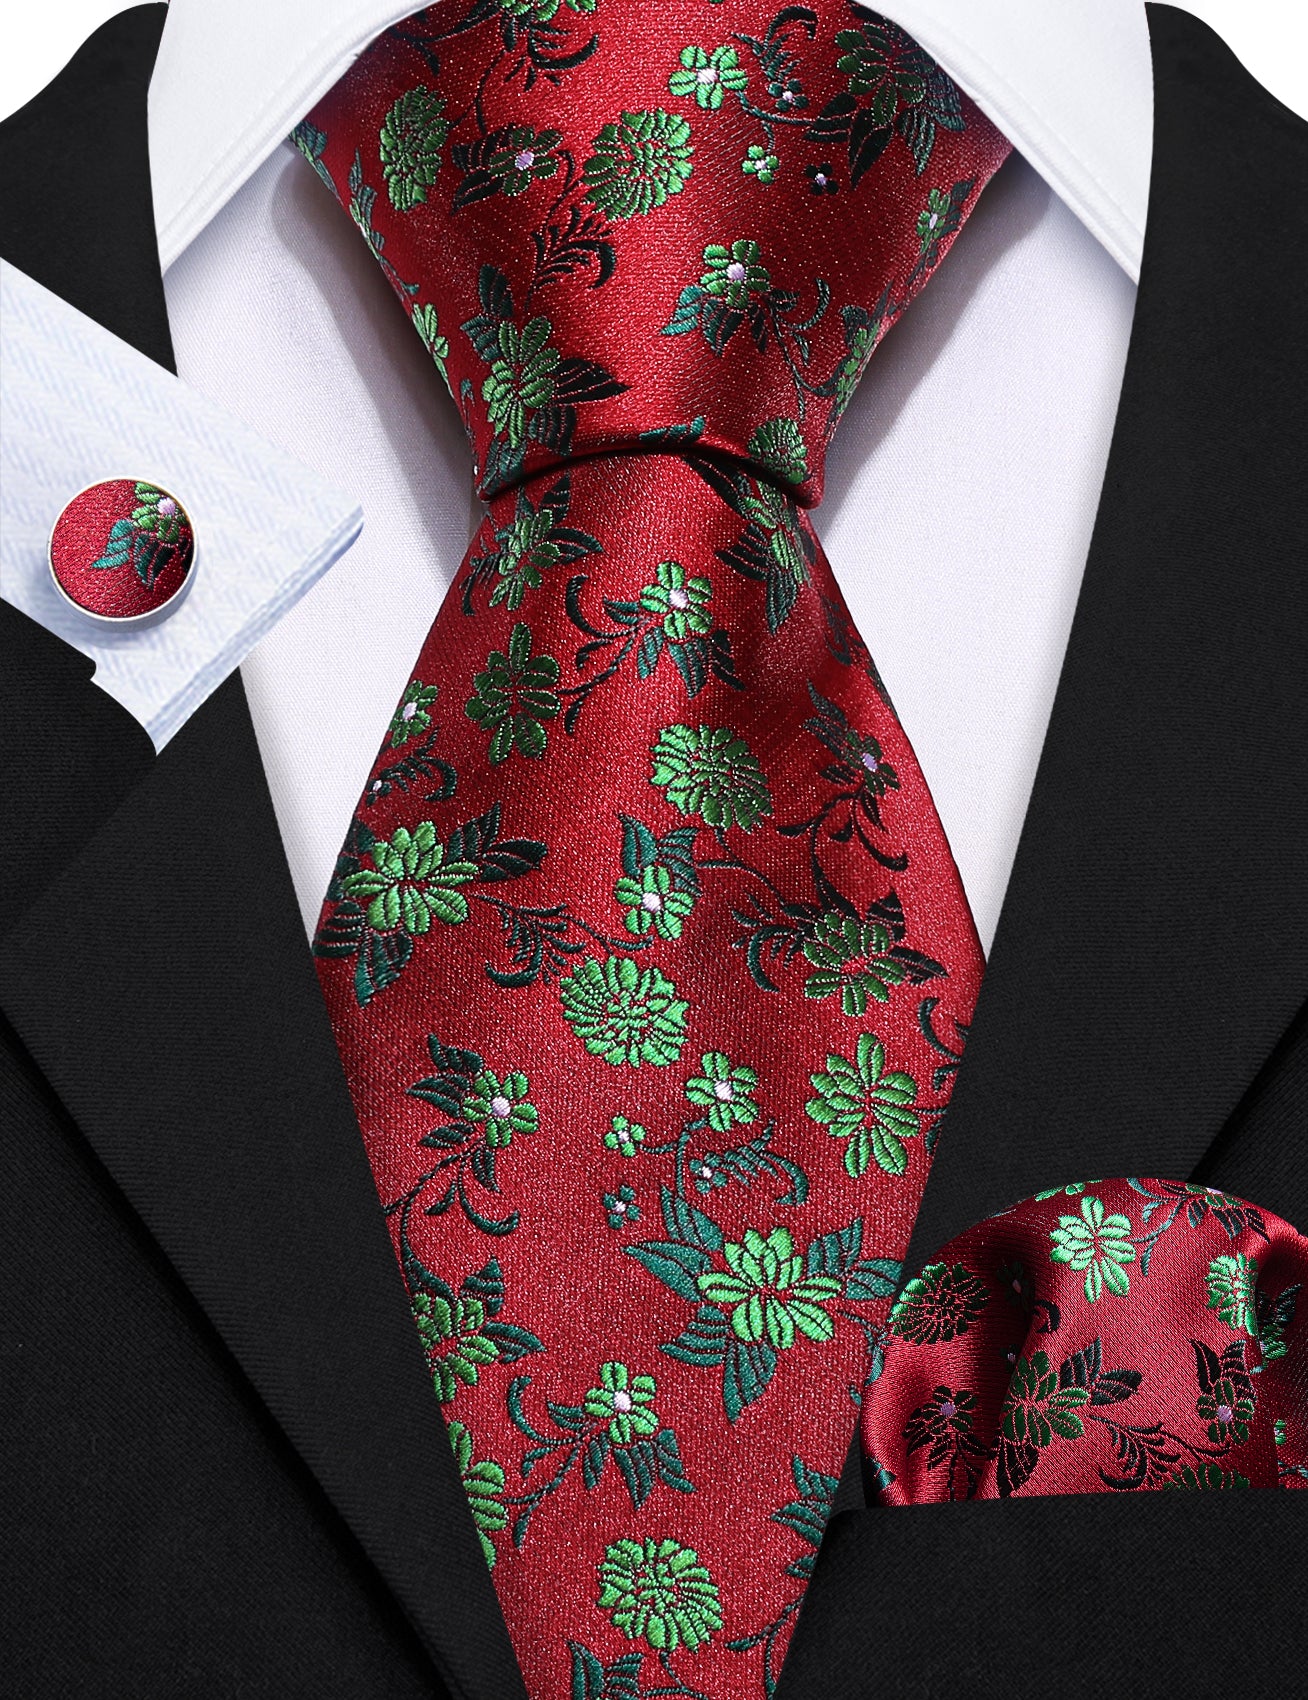  Red Tie Fashion Green Flower Silk Tie Hanky Cufflinks Set